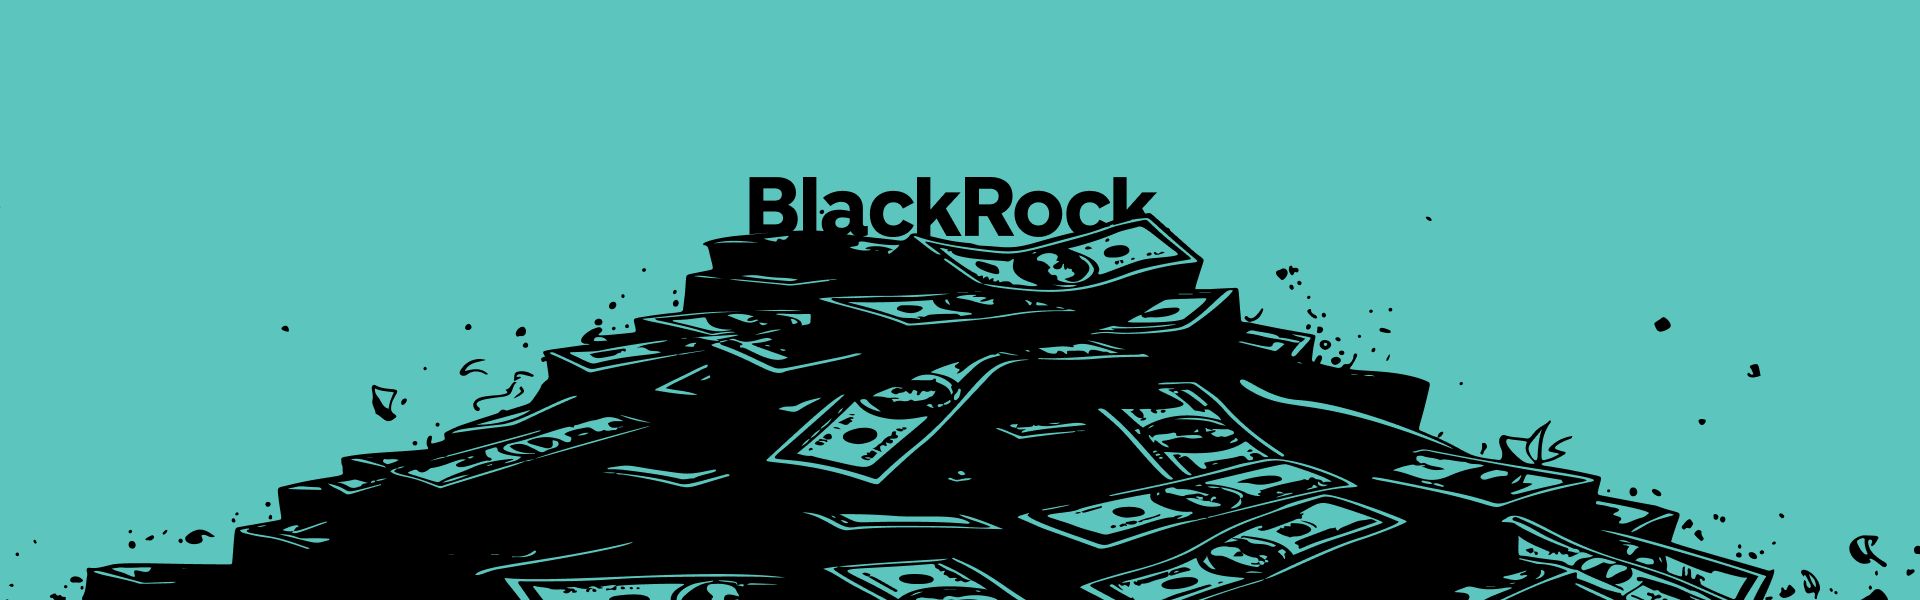 Лише ETF від BlackRock зараз торгується «в плюсі»